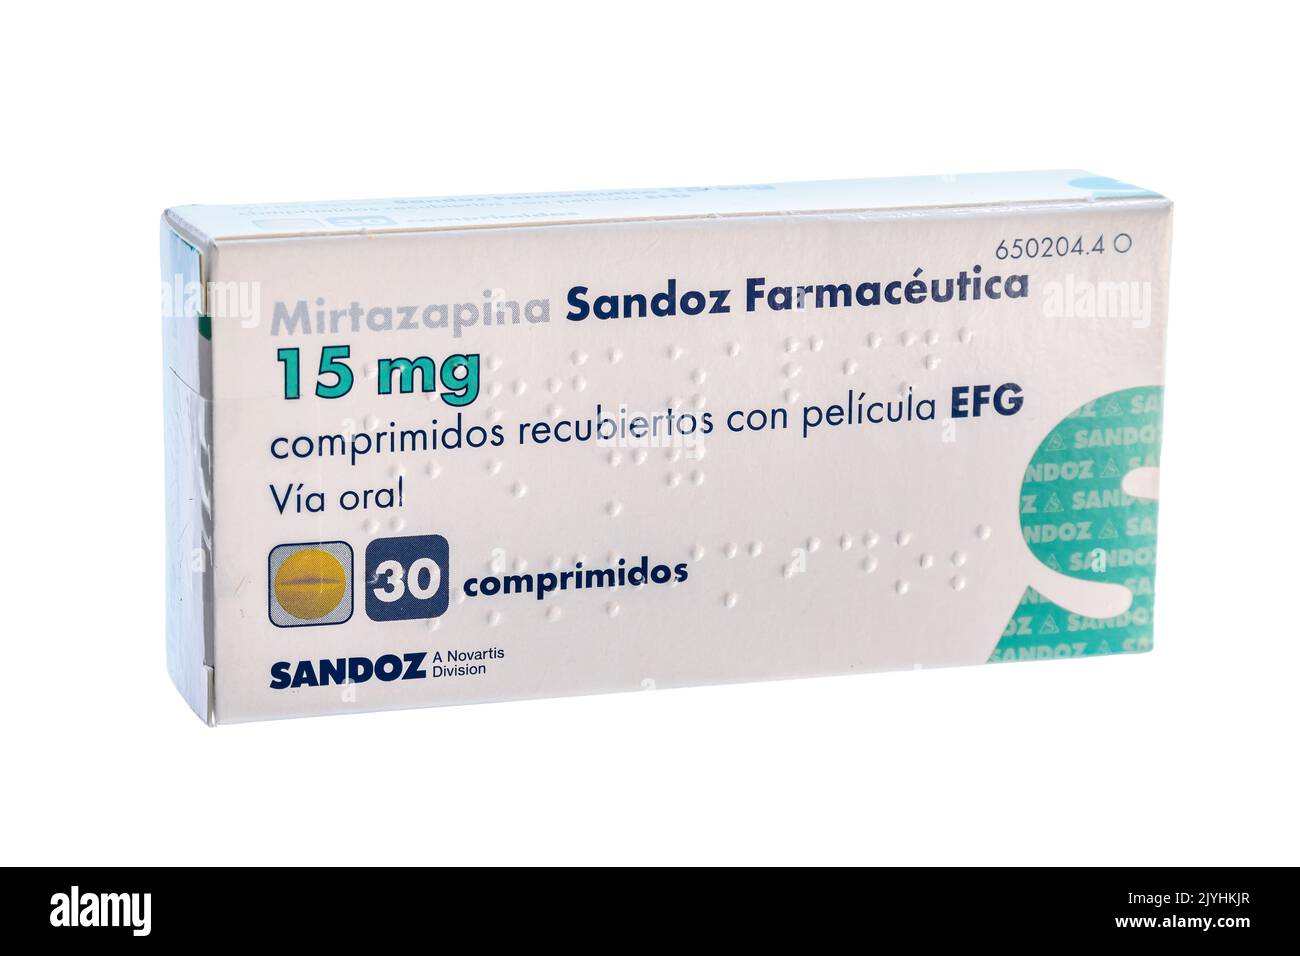 Huelva, Espagne - 8 septembre 2022: Mirtazapine Sandoz Farmaceutica. C'est un médicament antidépresseur. Il est utilisé pour traiter la dépression et parfois obse Banque D'Images